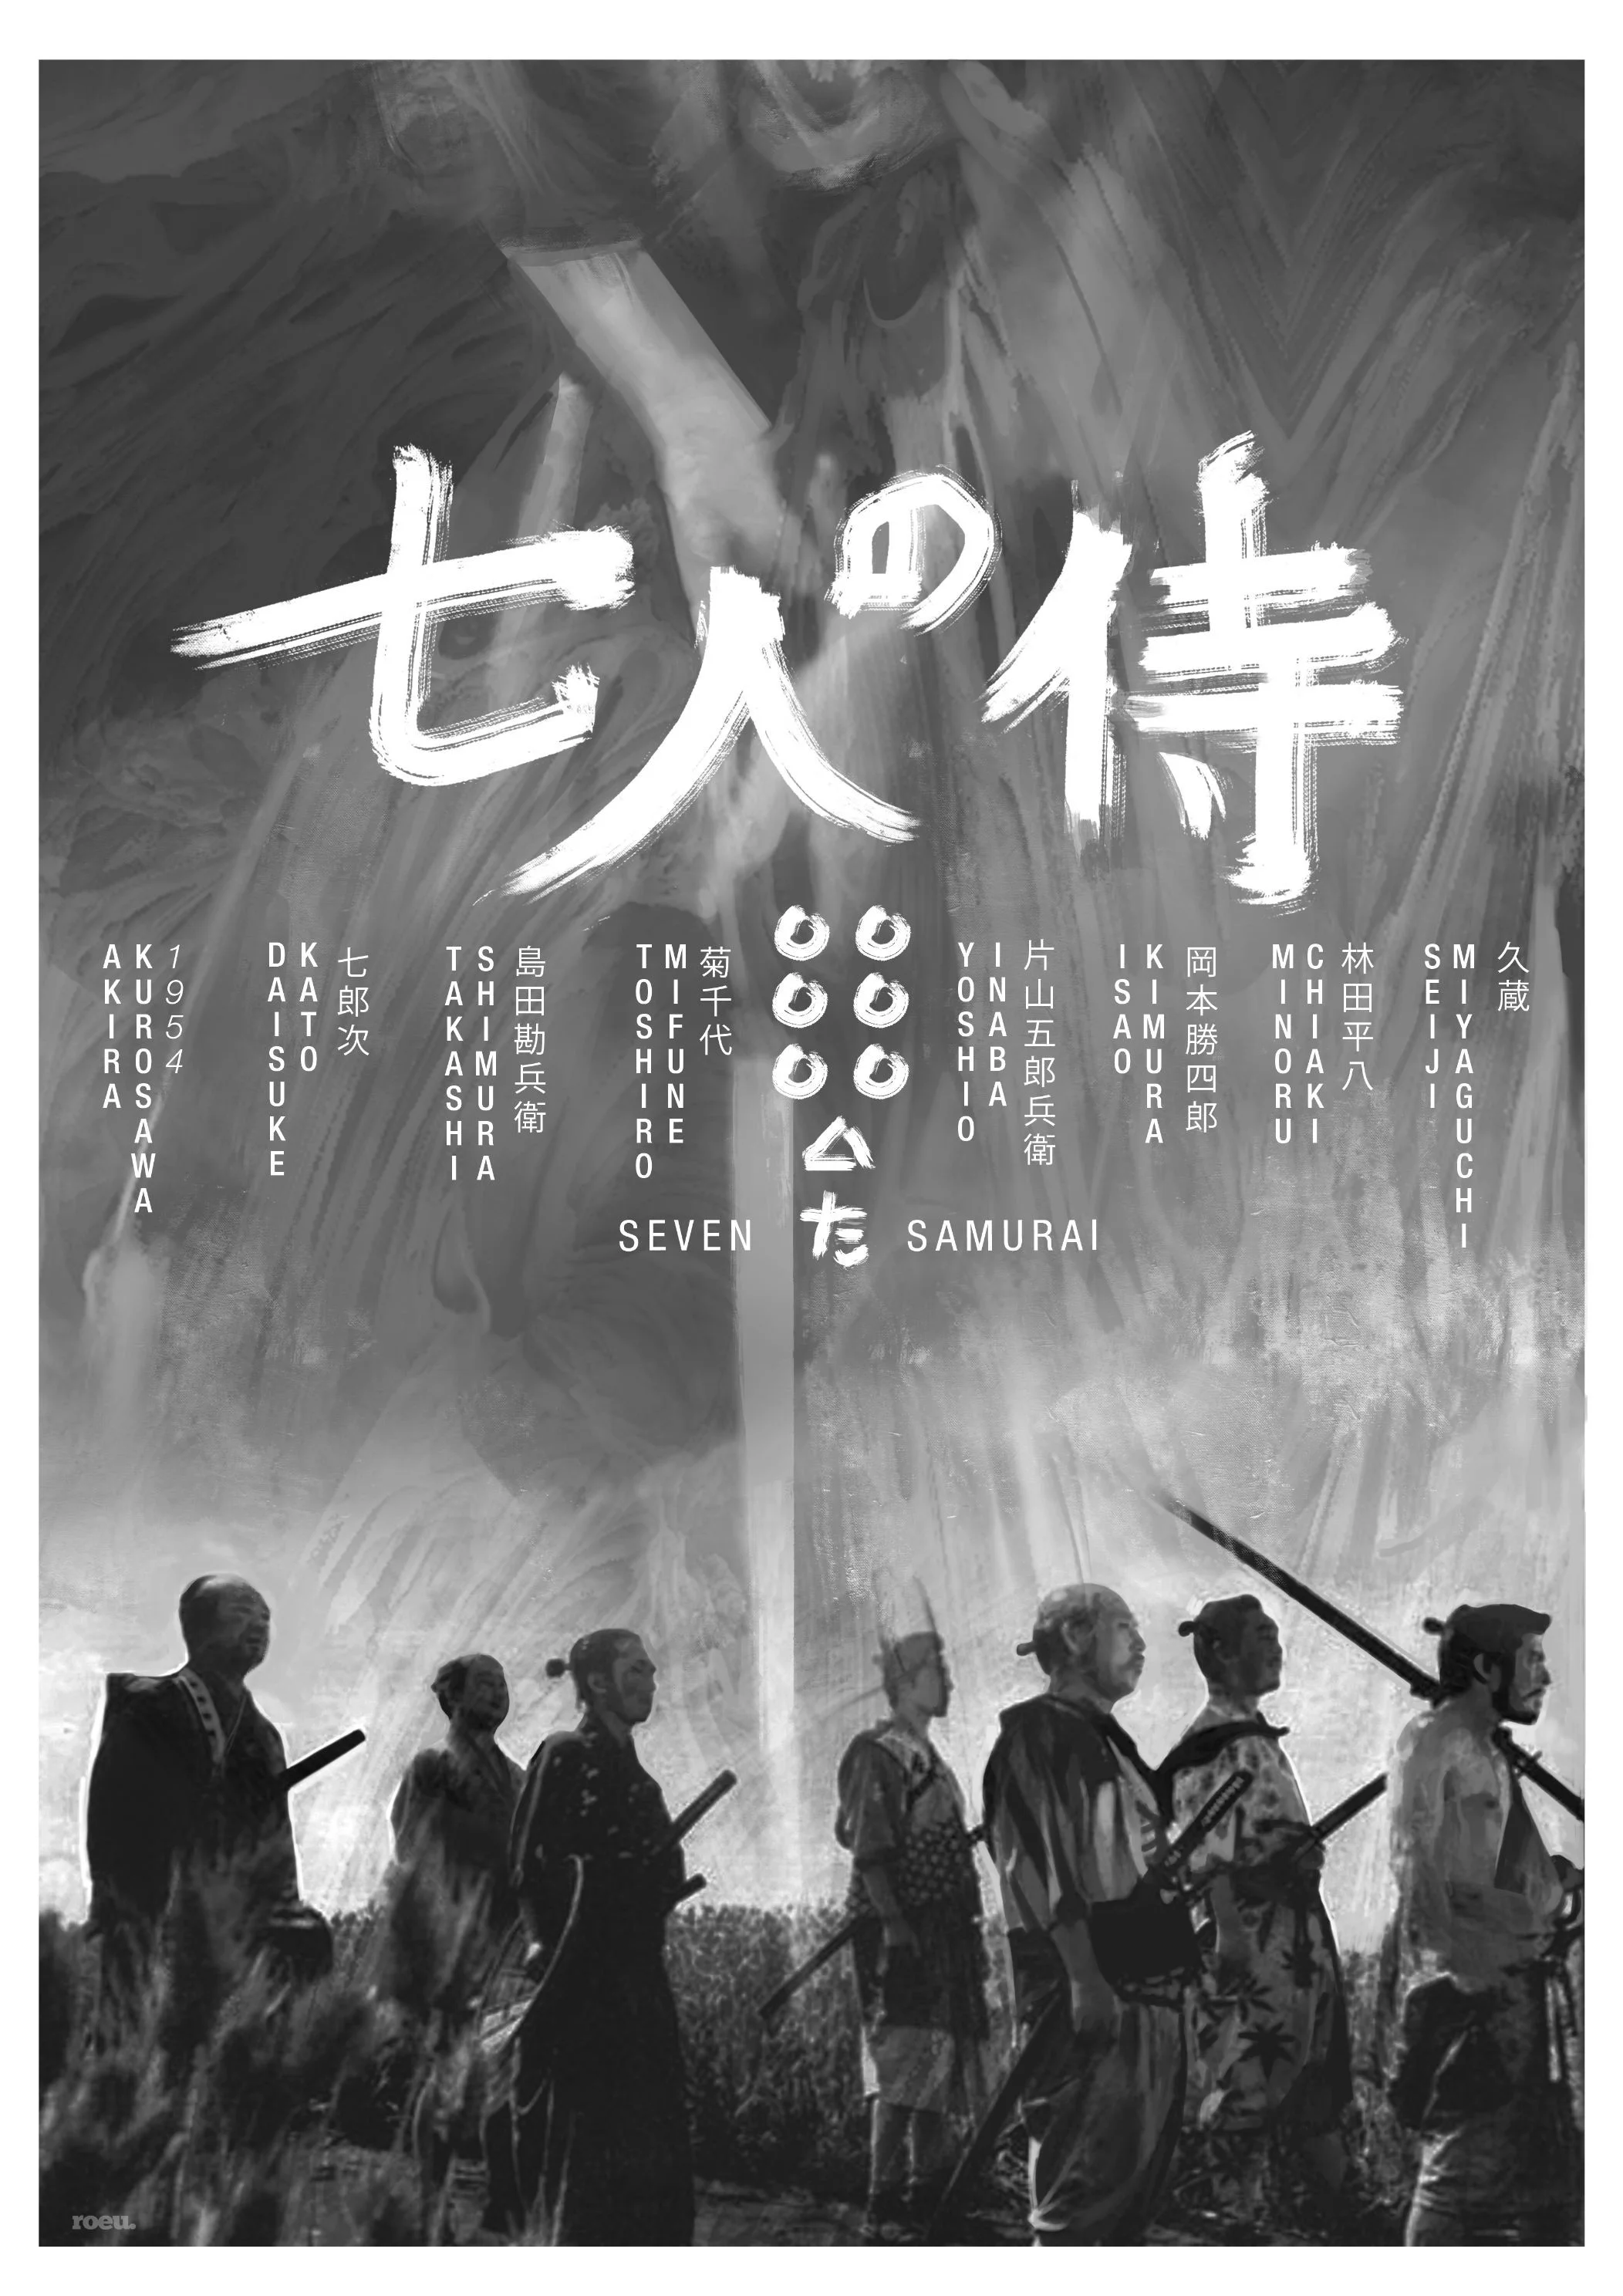 Seven Samurai 1954 by Akira Kurosawa